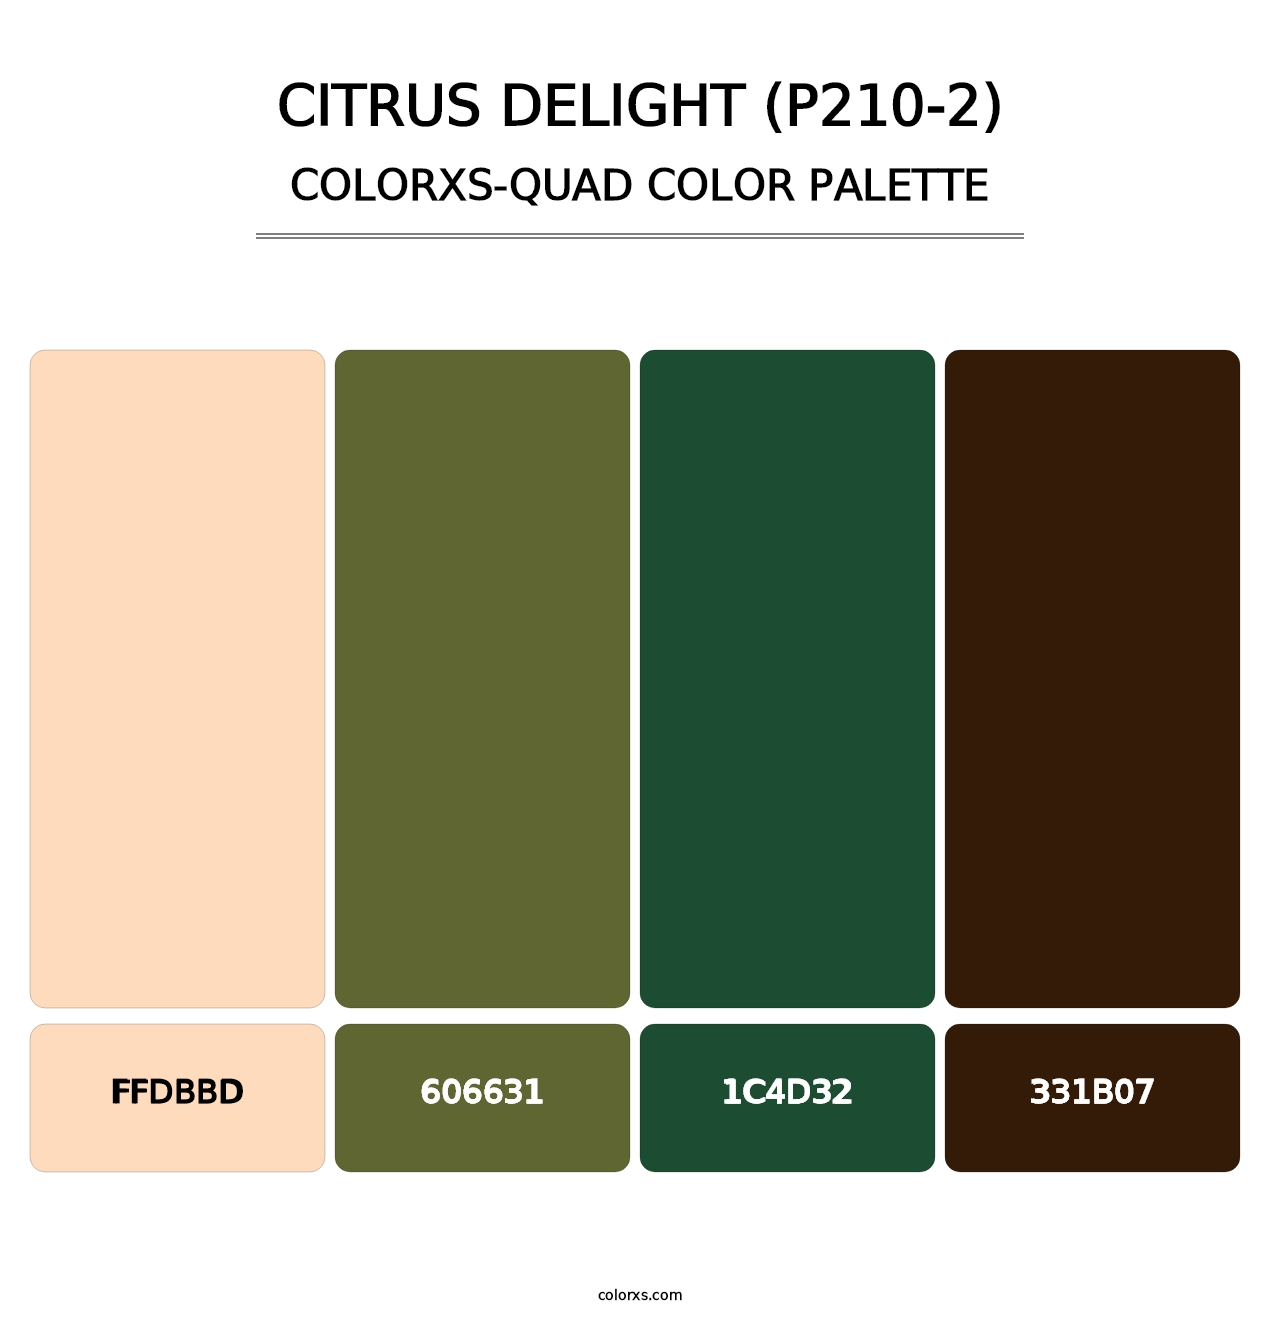 Citrus Delight (P210-2) - Colorxs Quad Palette